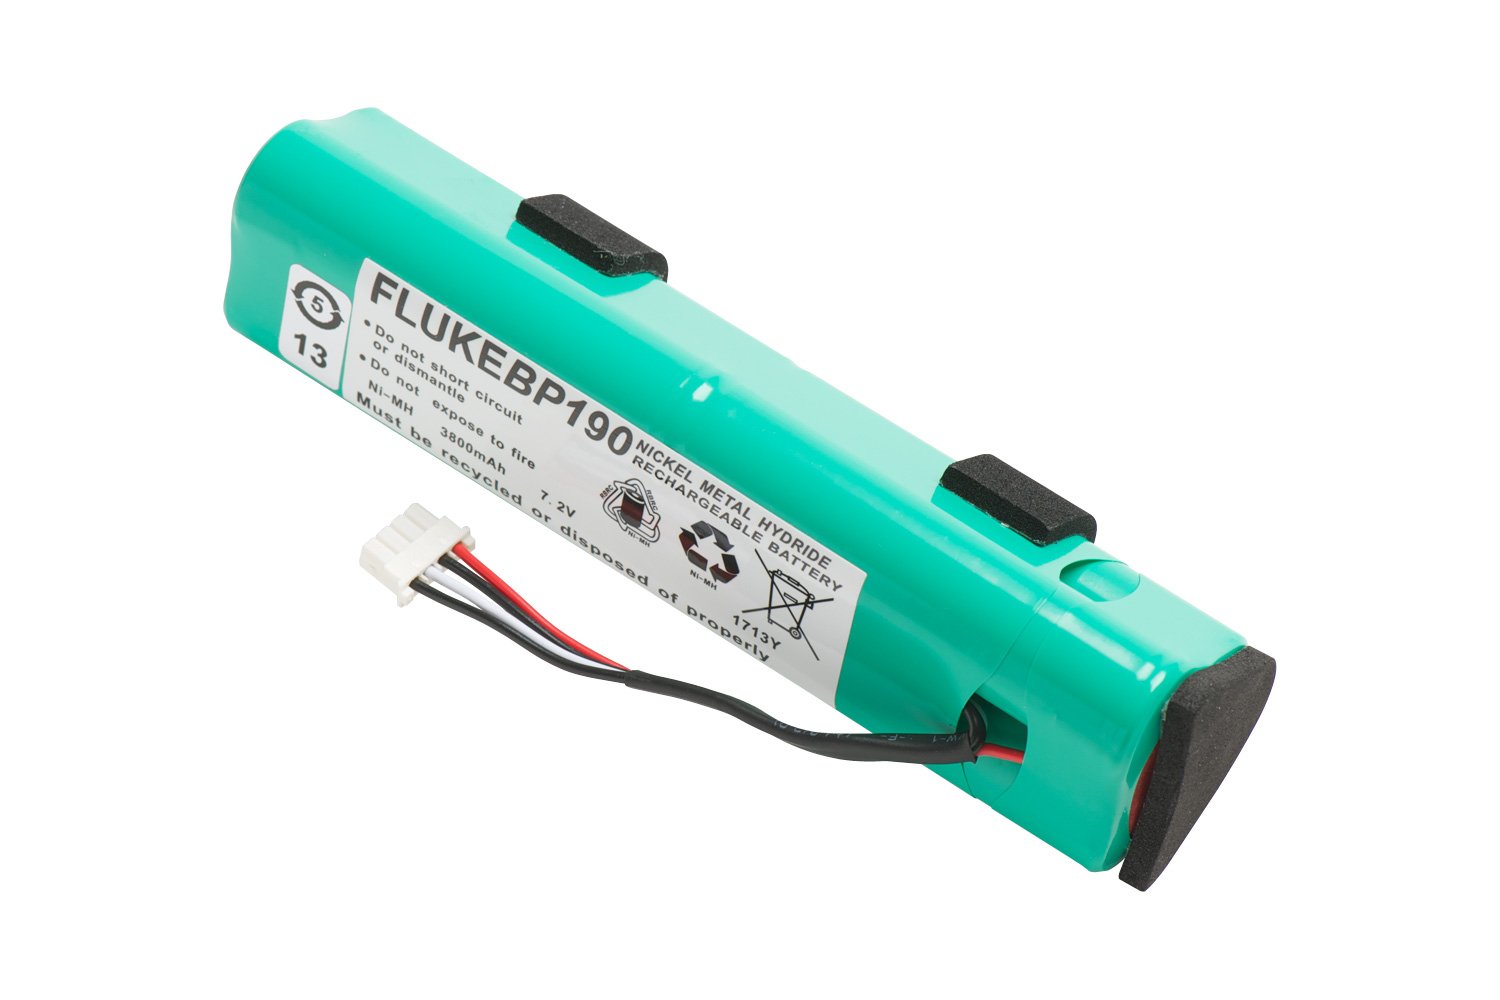 Fluke BP190 Rechargeable NiMH Battery Pack for sale online